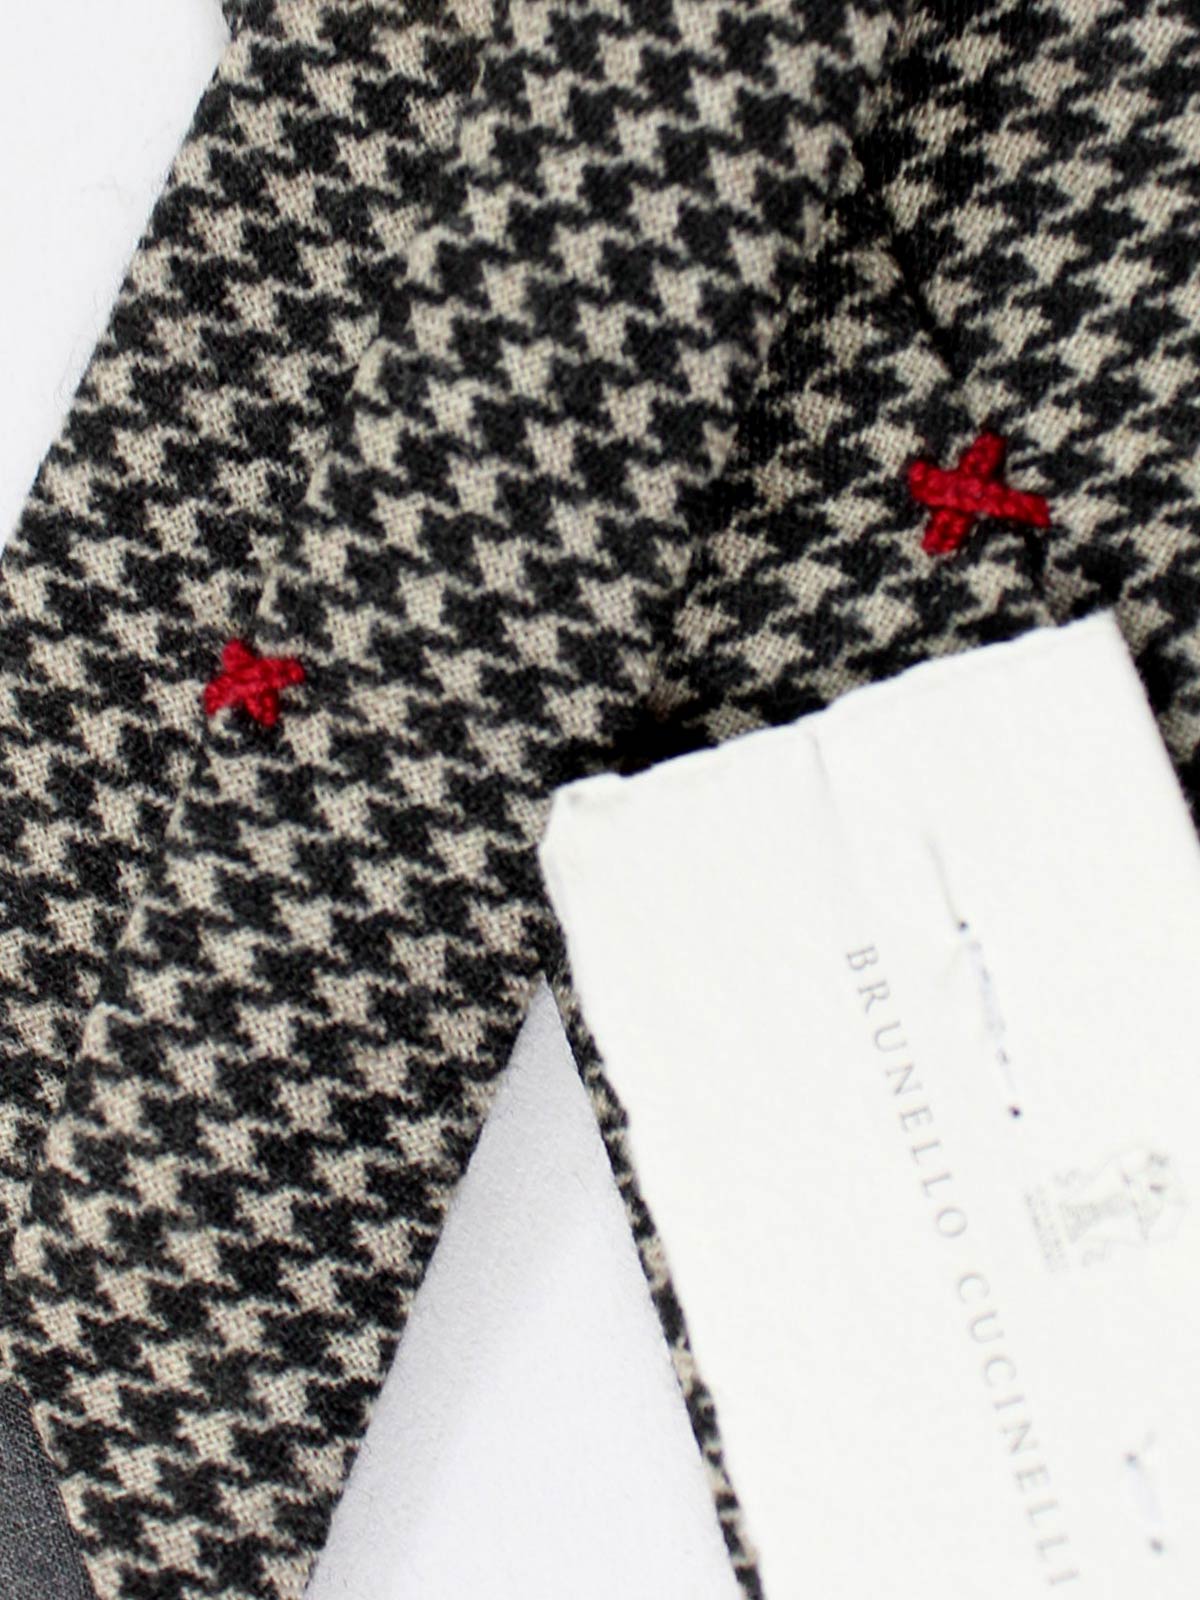 Brunello Cucinelli Wool Tie Gray Black Houndstooth